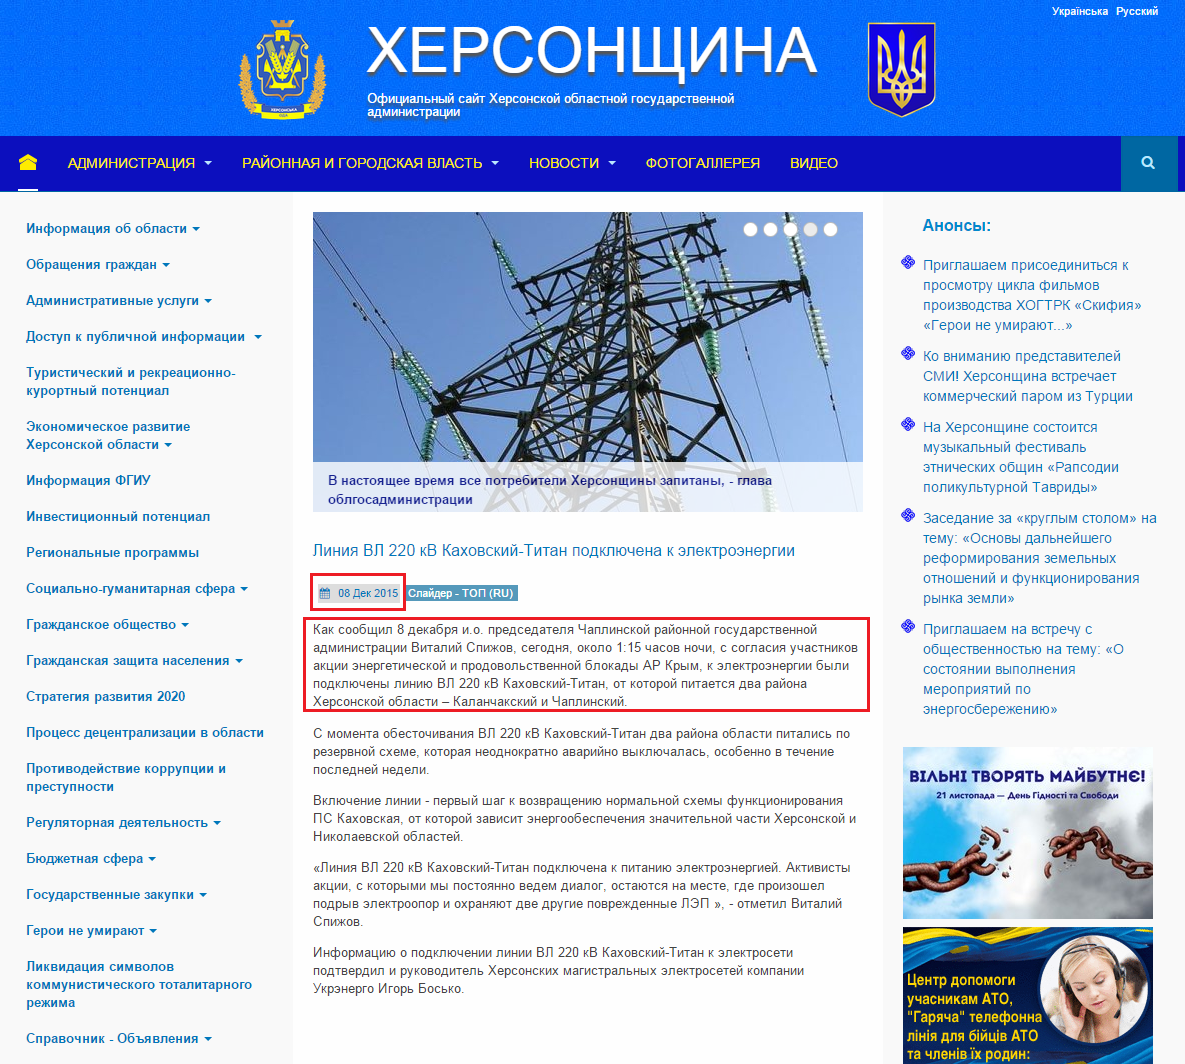 http://www.khoda.gov.ua/ru/56-slajder-novosti-ru/15378-liniya-vl-220-kv-kakhovskij-titan-podklyuchena-k-elektroenergii